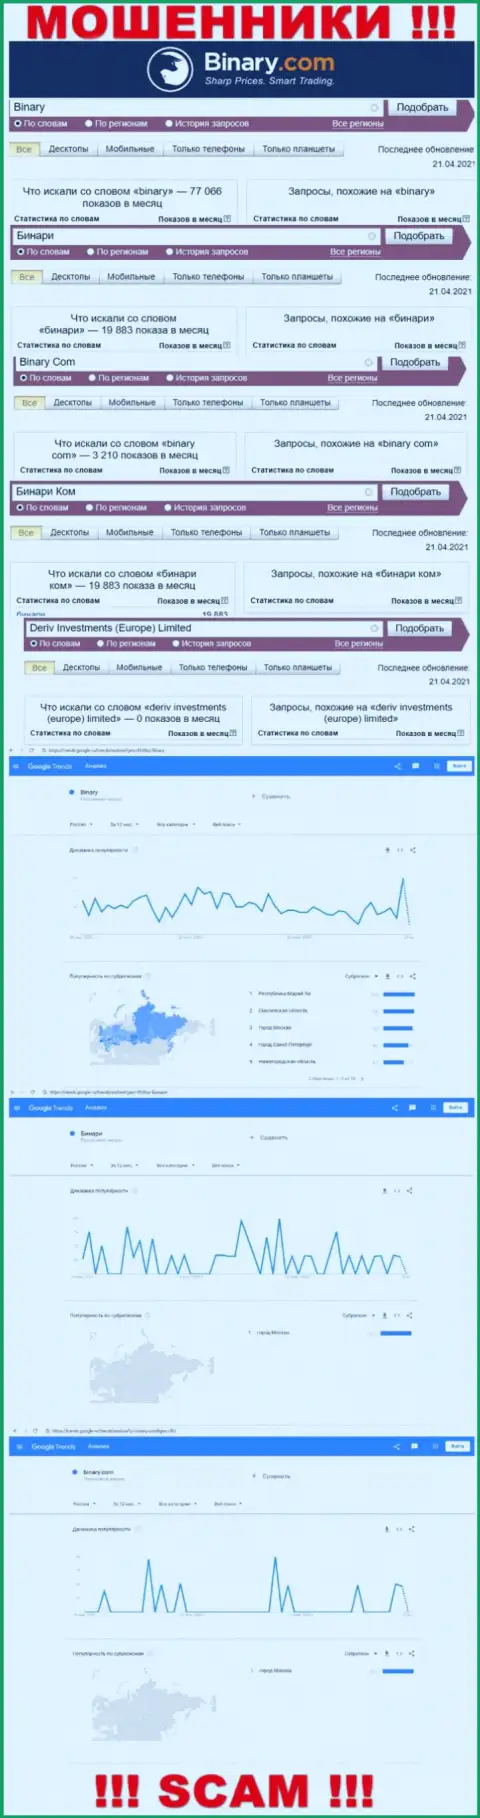 Количество поисковых запросов данных о мошенниках Бинари в глобальной сети internet